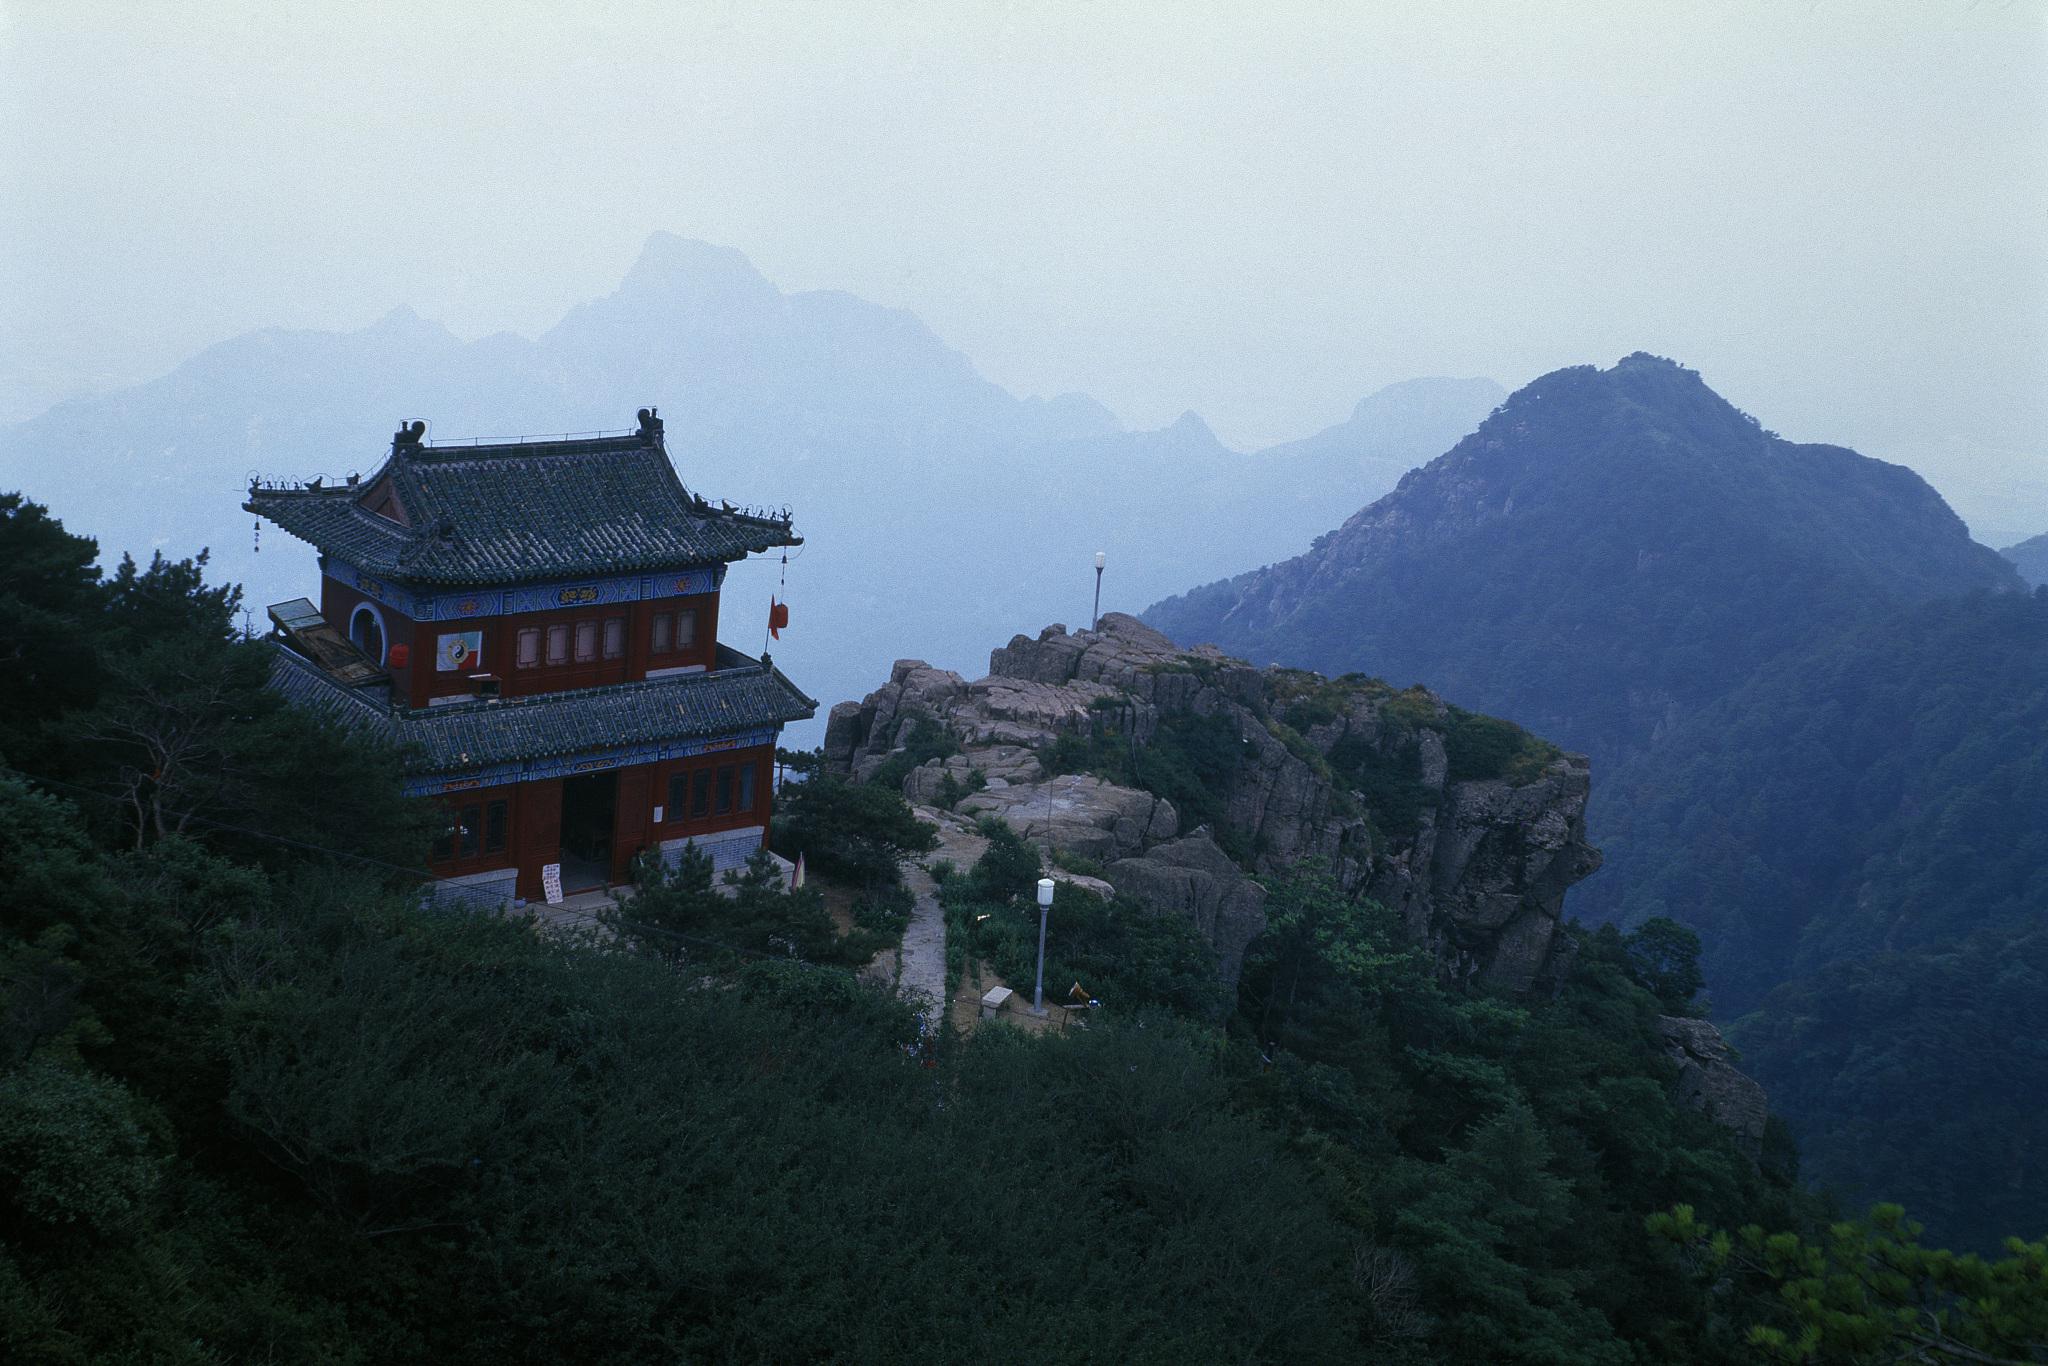 泰山位于山东省中部,是中国自然奇观和中华文化的瑰宝